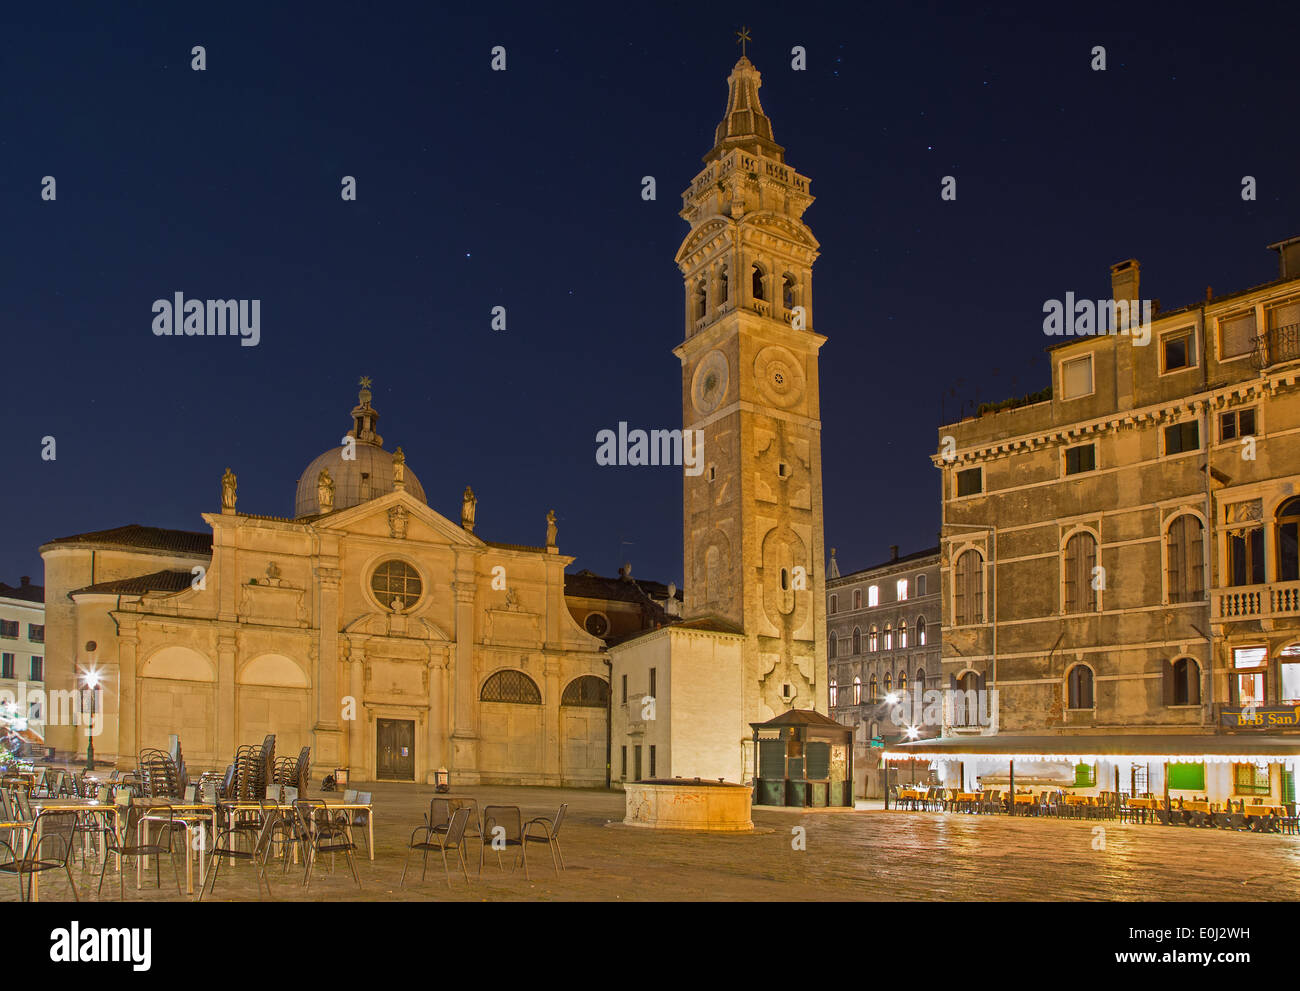 Venezia, Italia - 13 marzo 2014:Chiesa di Santa Maria Formosa la chiesa e la piazza di notte Foto Stock